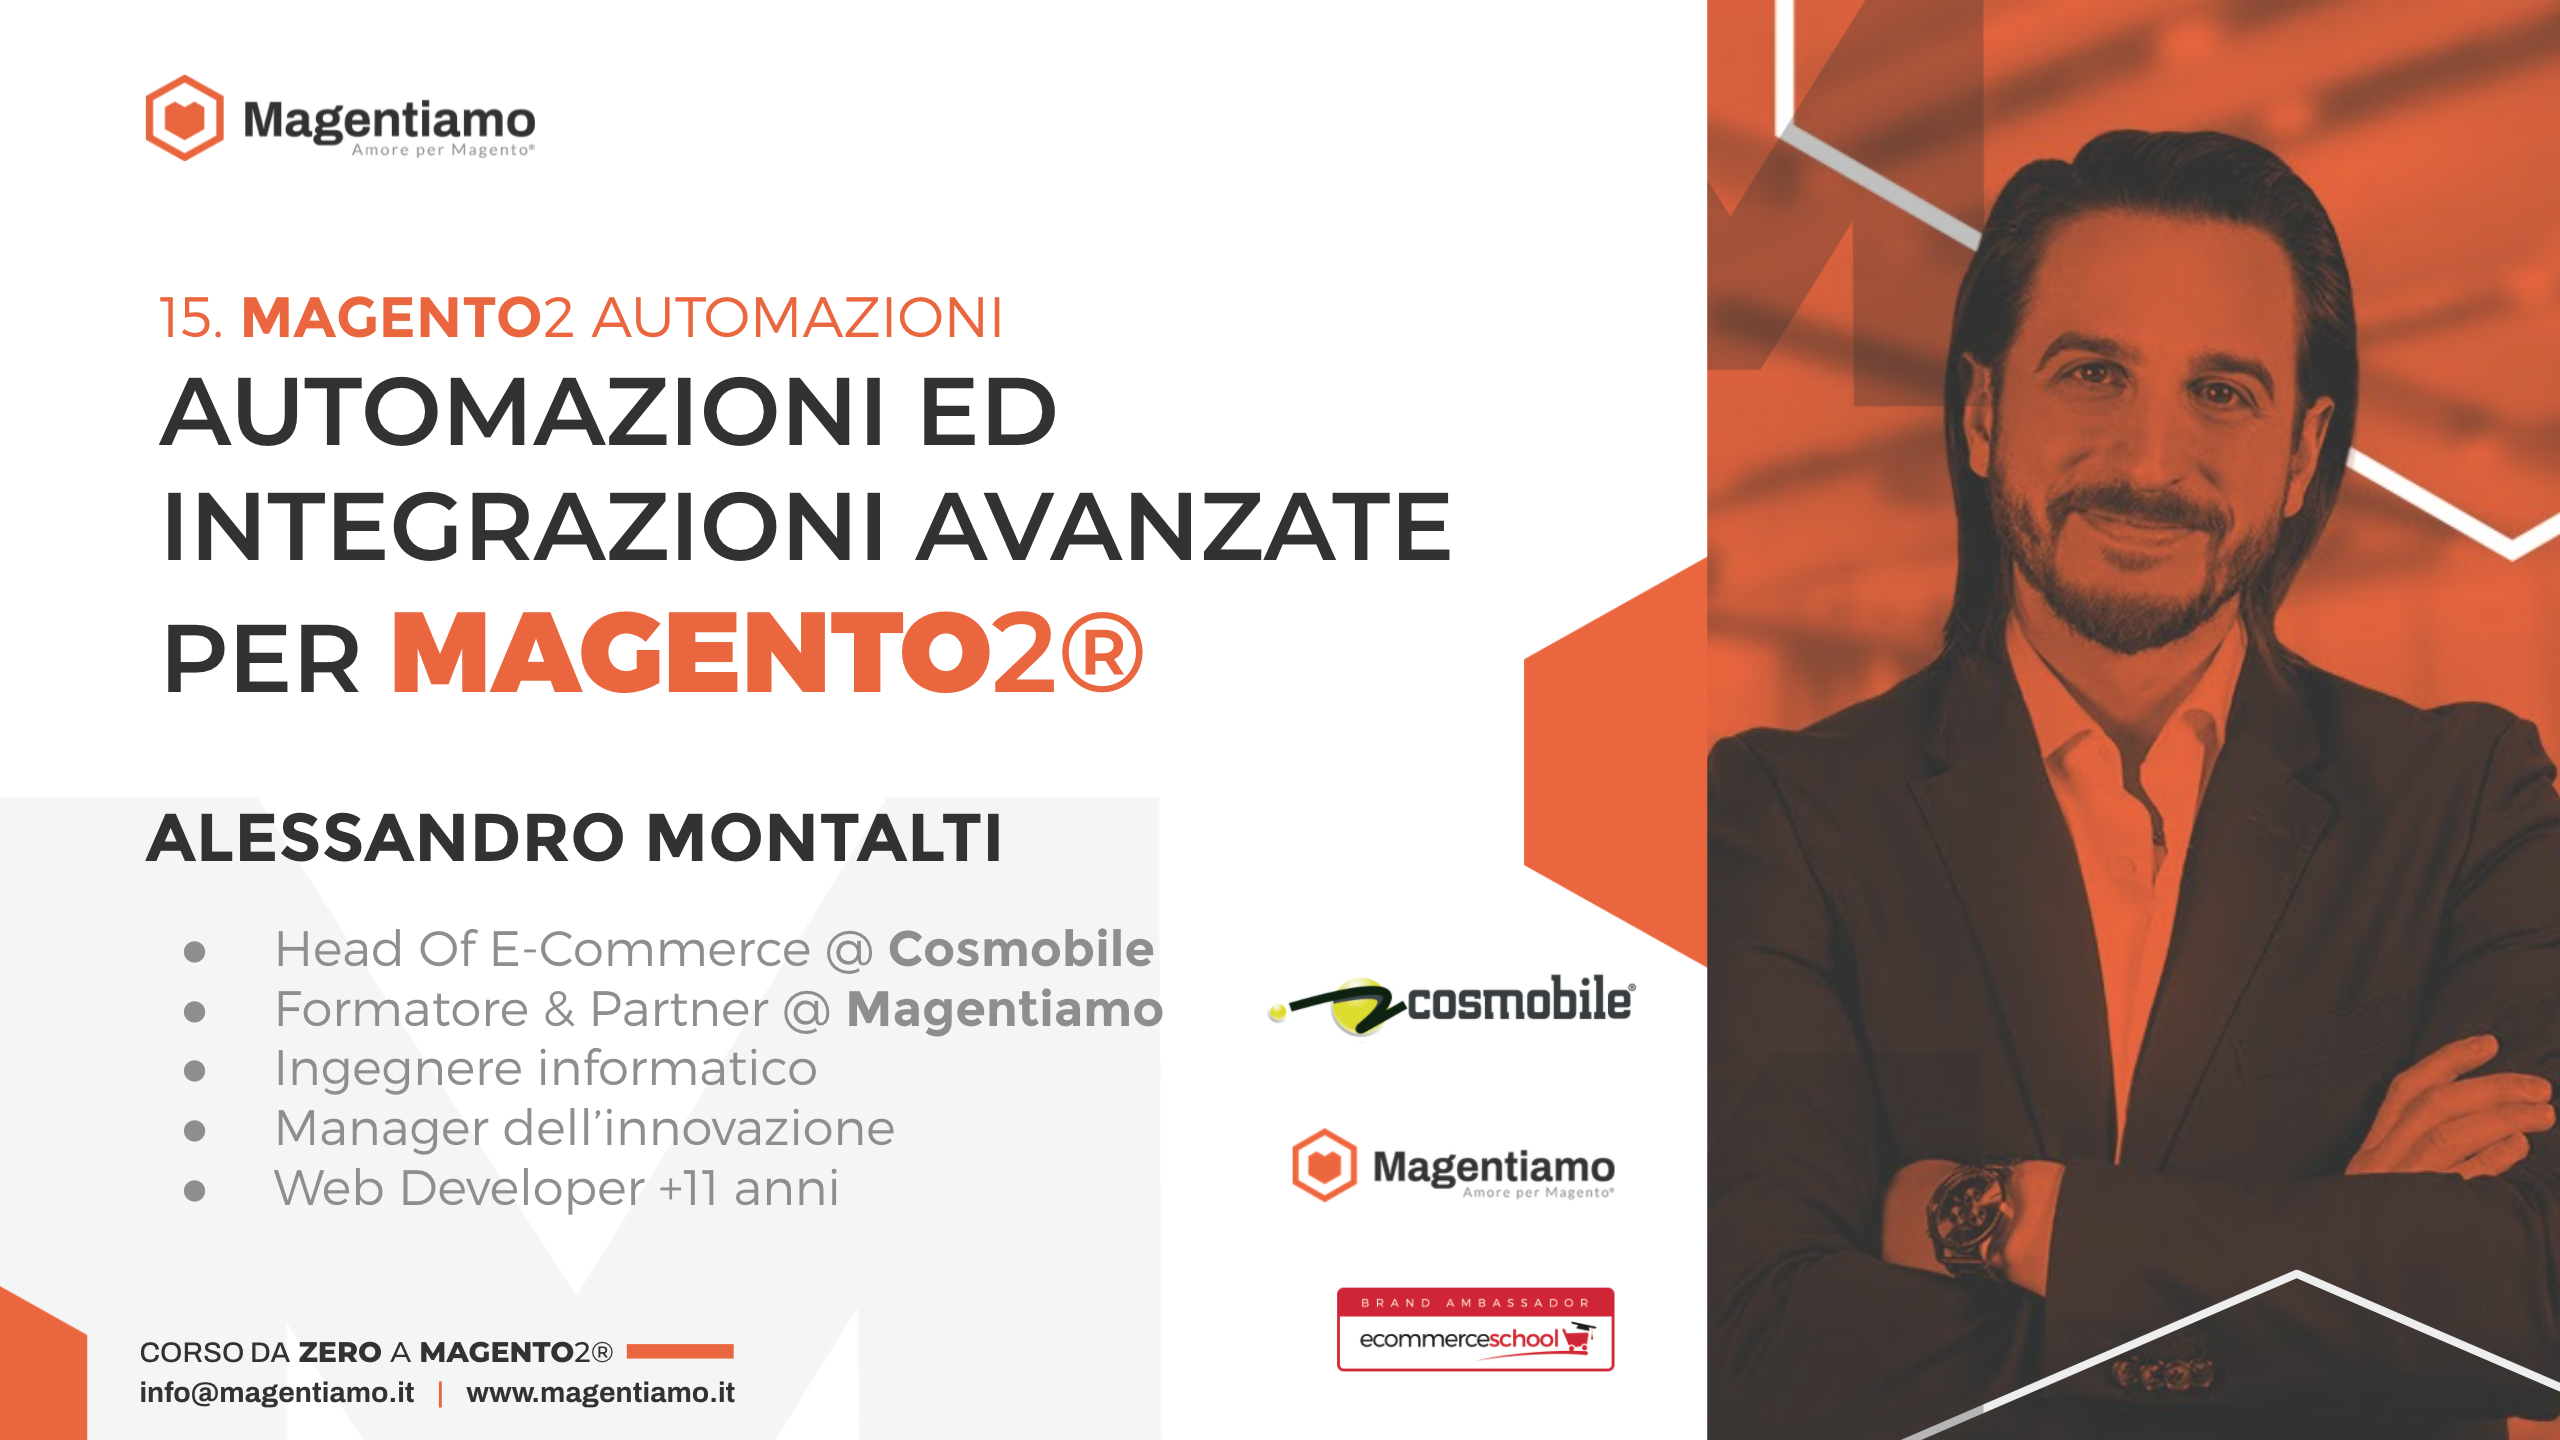 15. AUTOMAZIONI - Automazioni e integrazioni avanzate per Magento 2 - Alessandro Montalti COSMOBILE